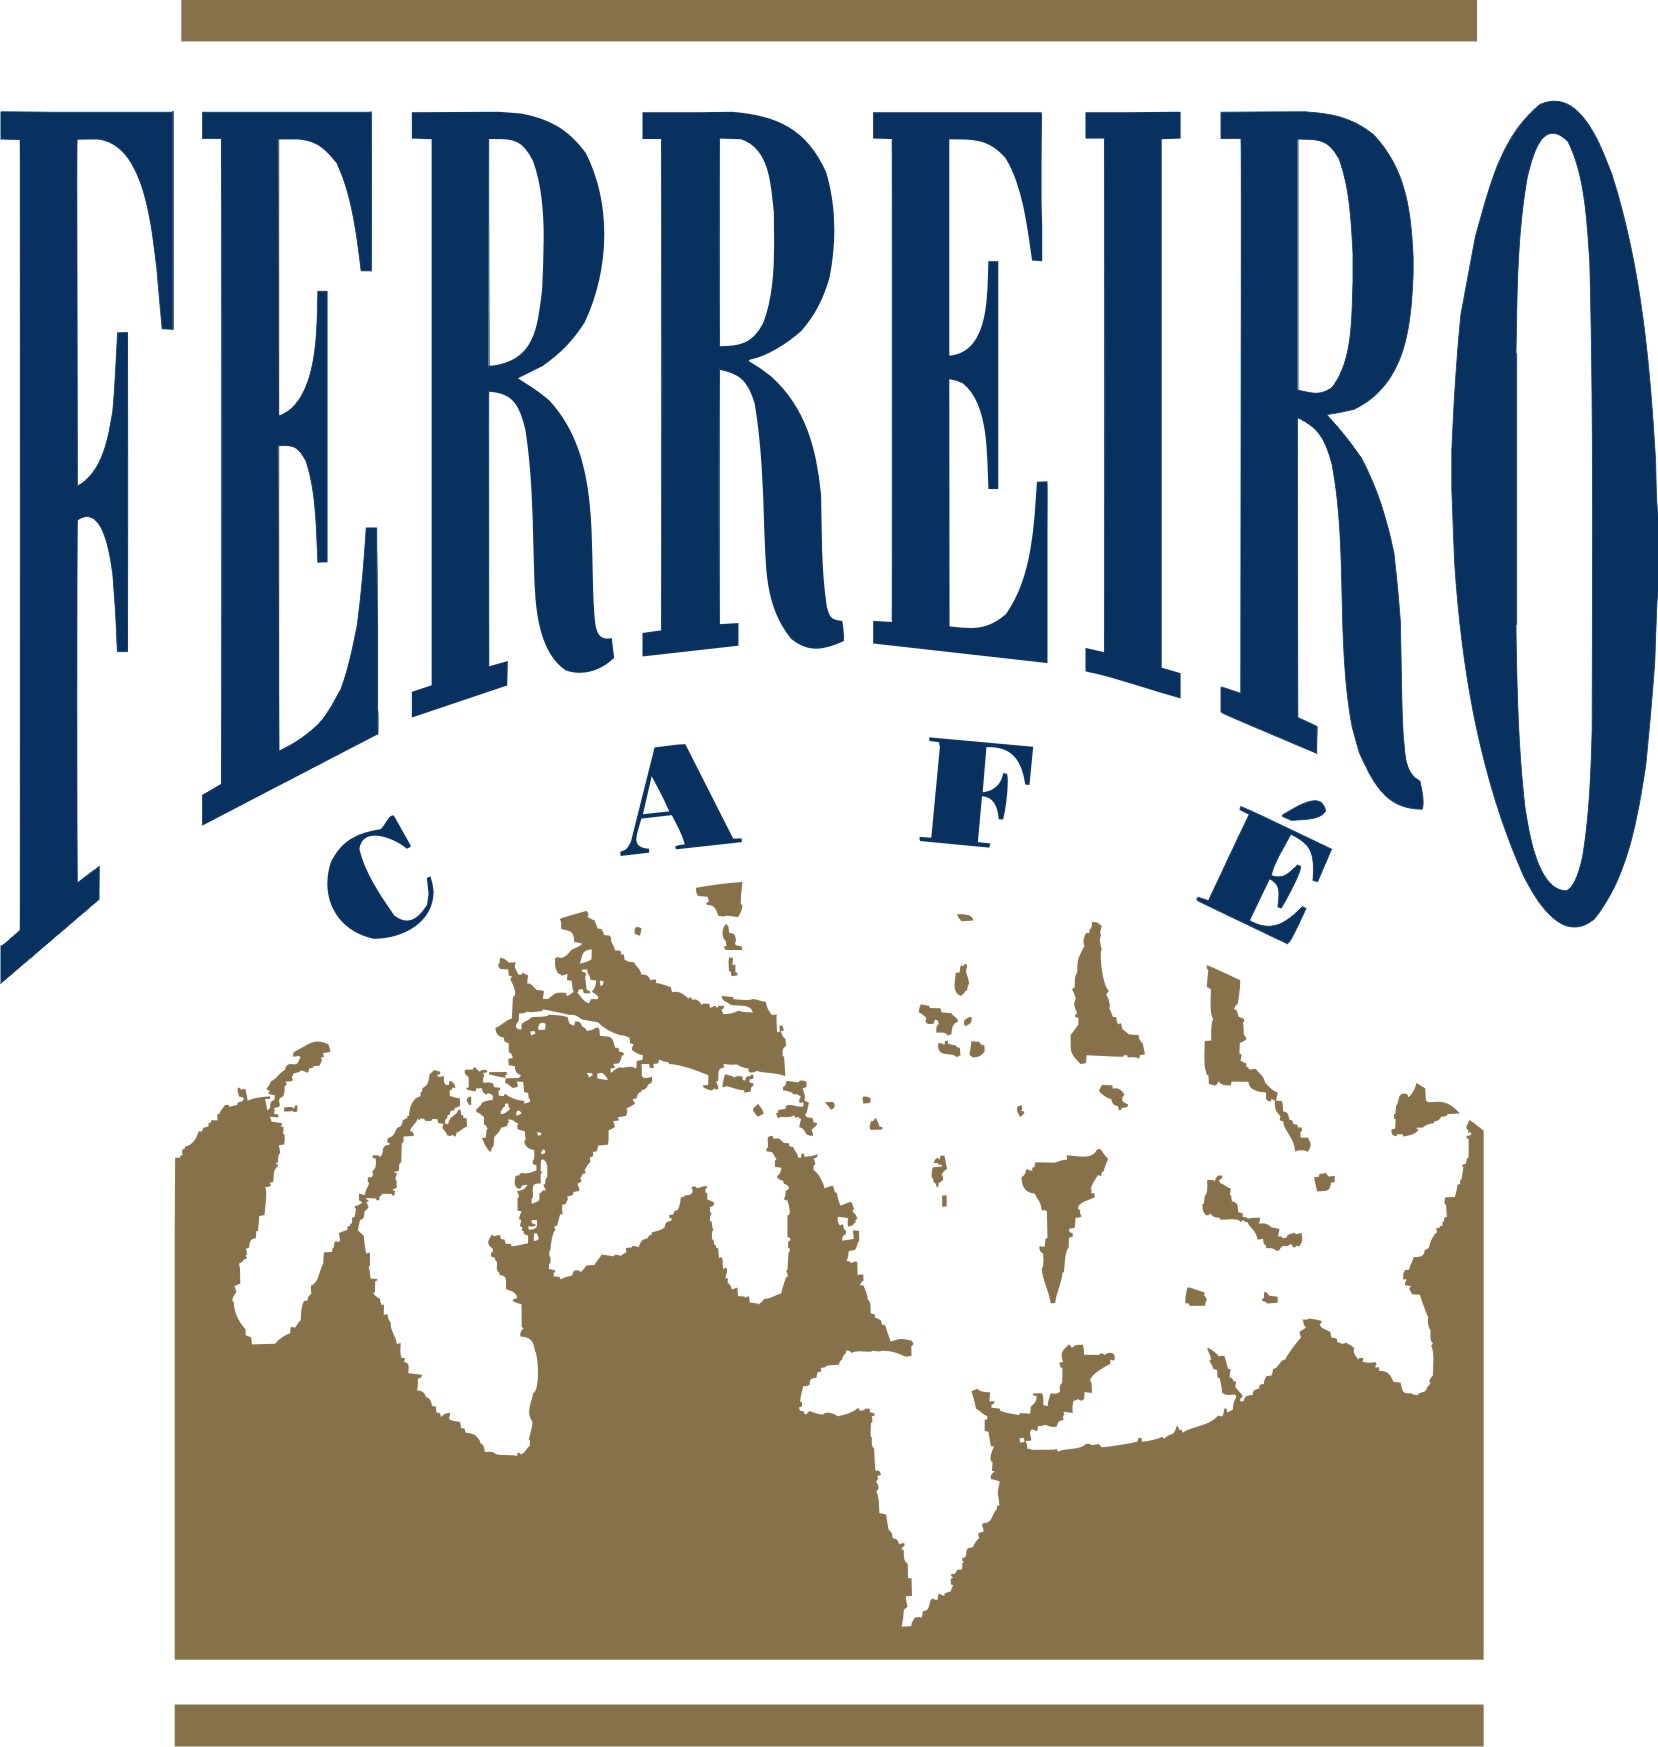 Ferreiro Café